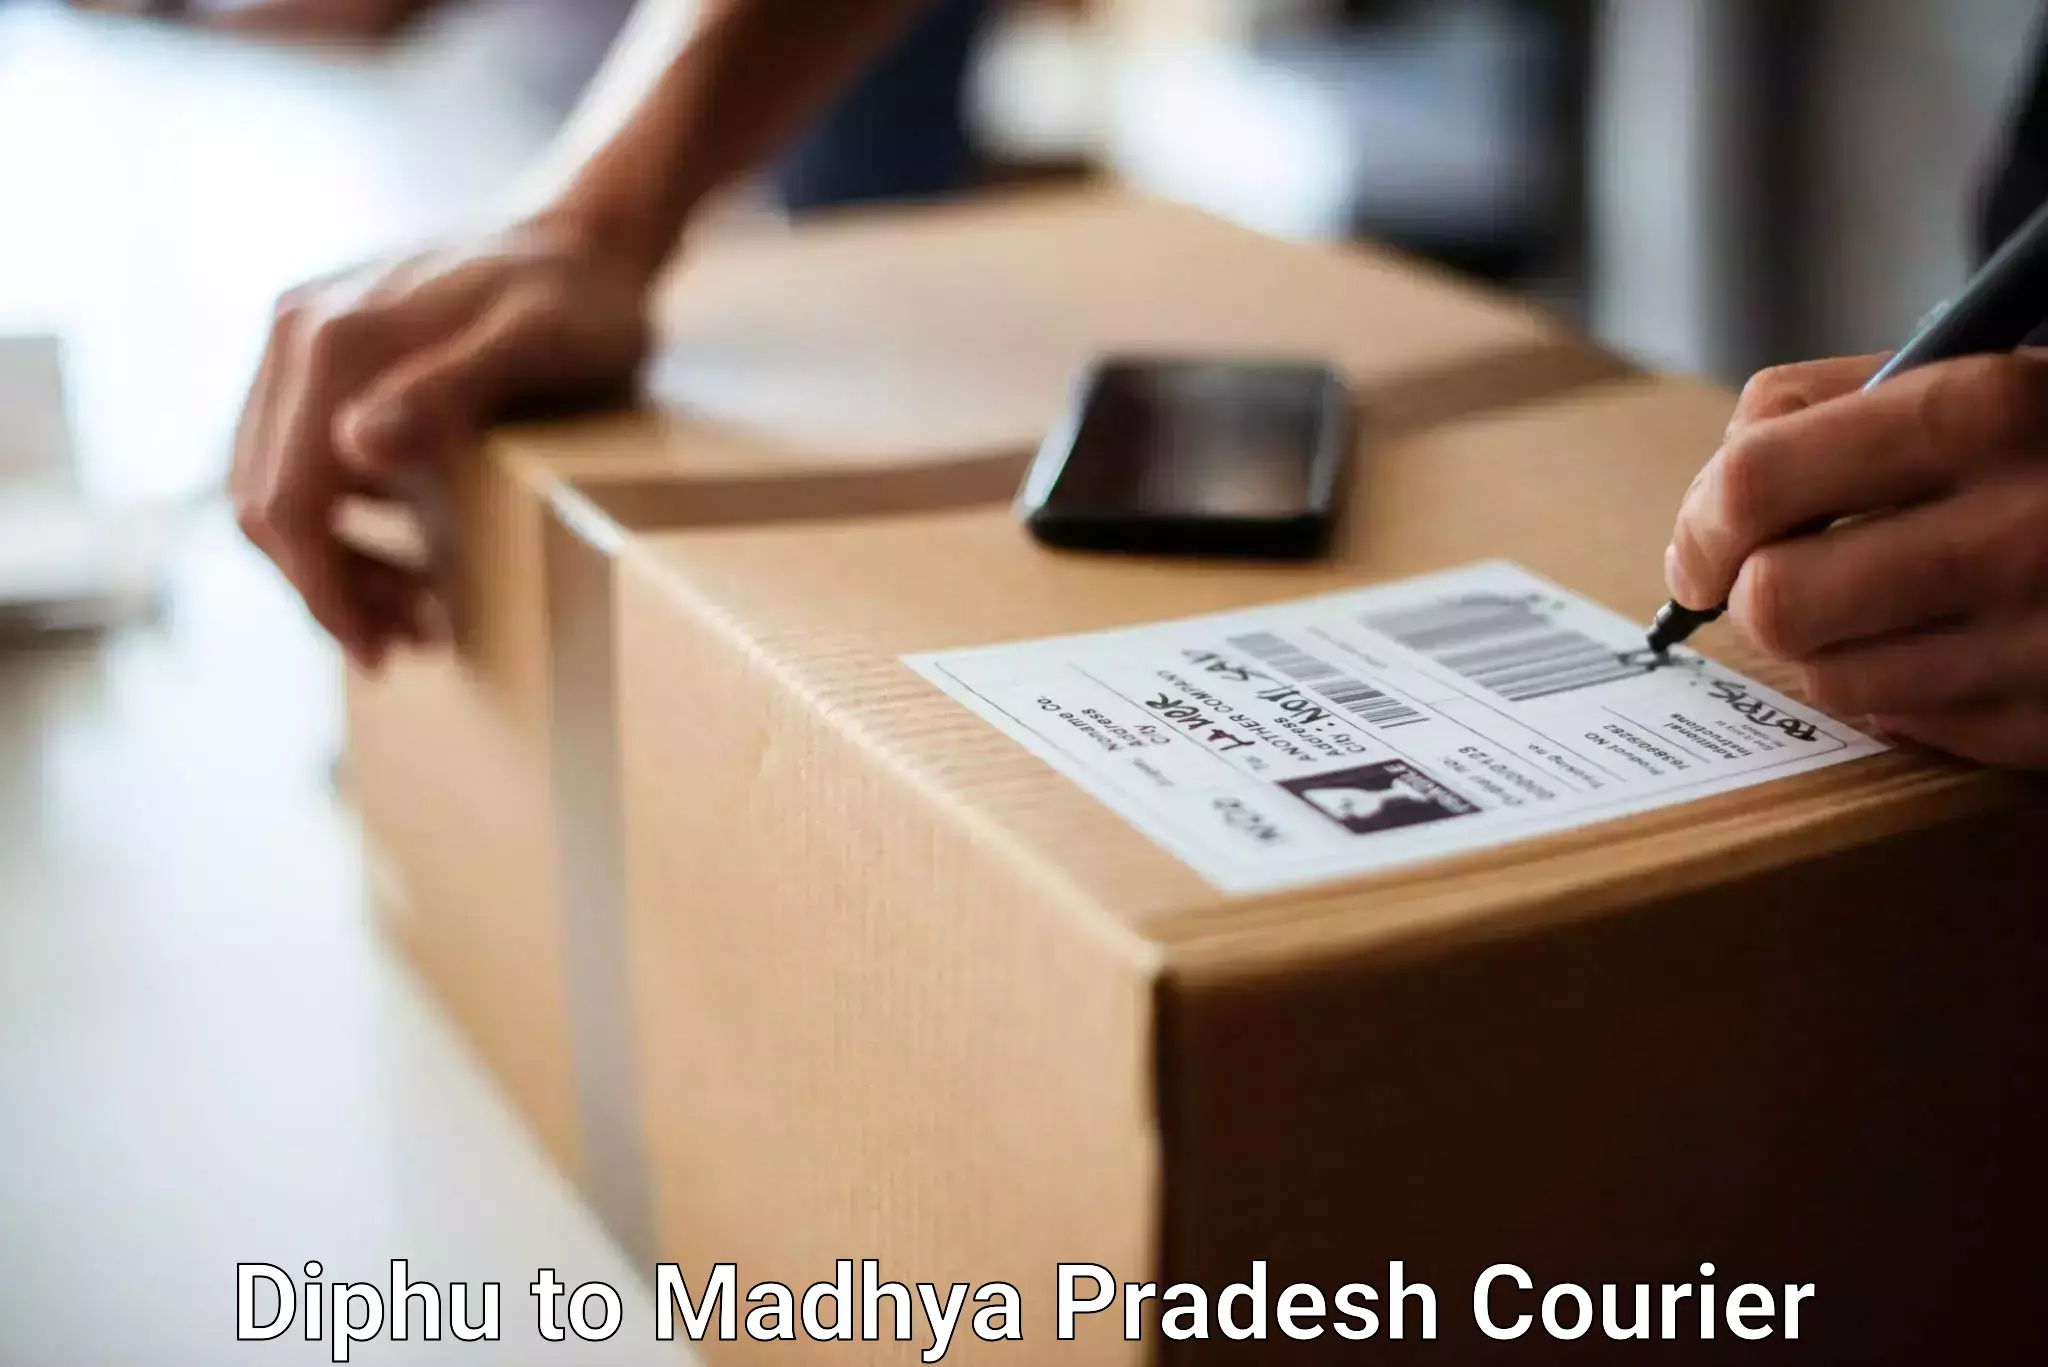 Efficient baggage courier system Diphu to Ganj Basoda